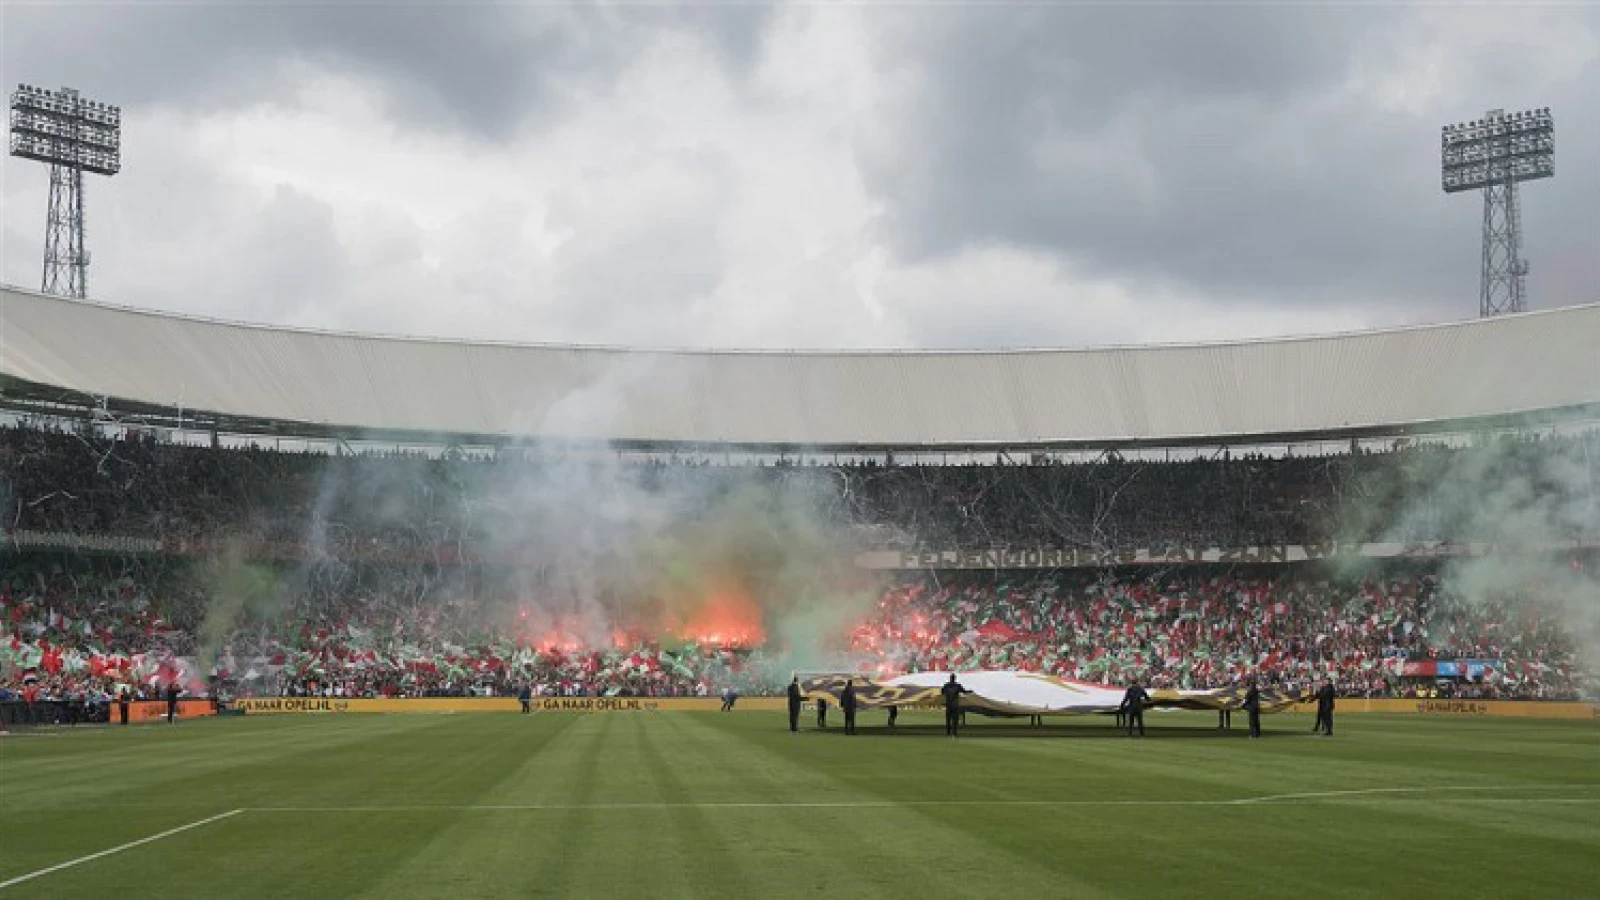 'Nederlandse voetbalstadions niet veilig genoeg, onderzoek start naar veiliger maken stadions'